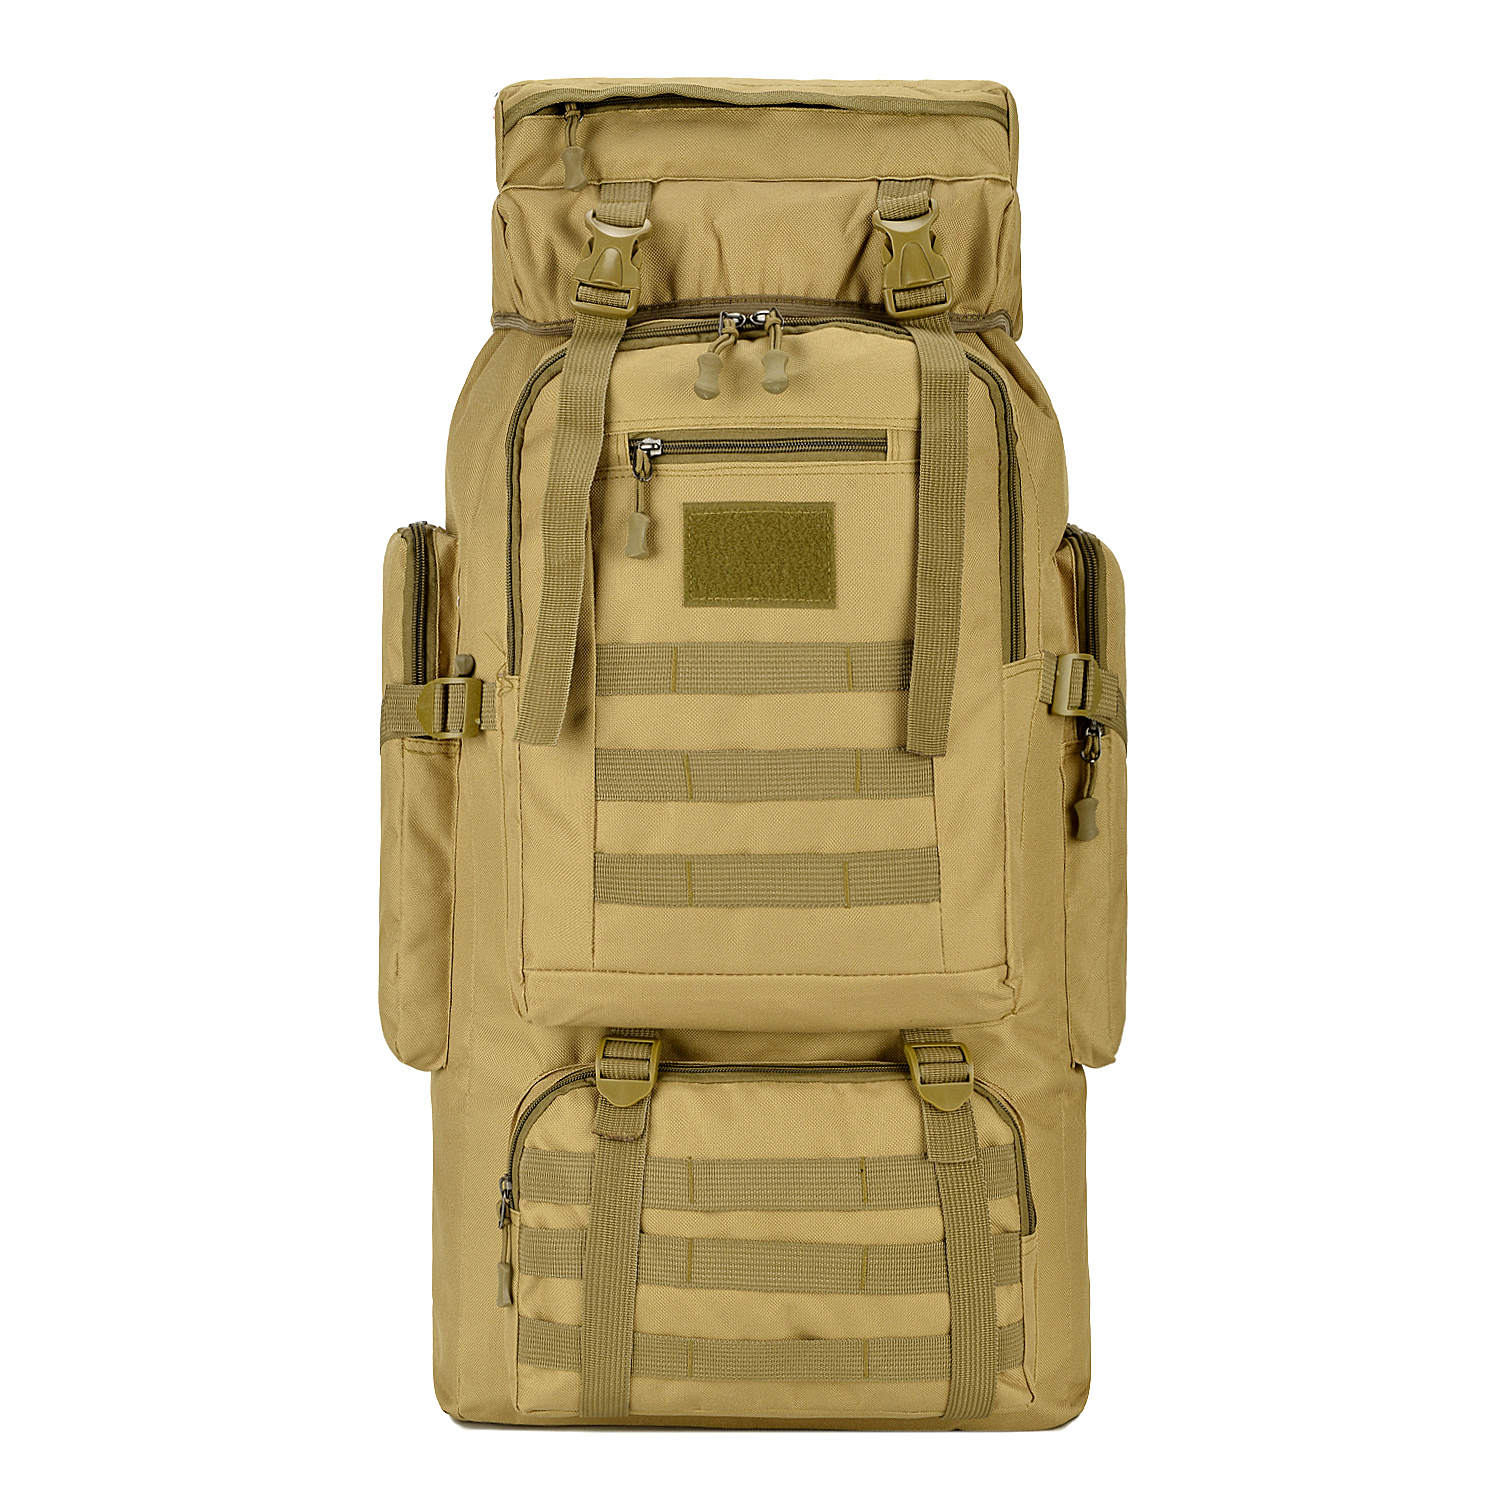 กระเป๋าเป้ 80L กระเป๋าเดินทาง กระเป๋าลายพราง กระเป๋าท่องเที่ยว กระเป๋าเป้ลายพราง ลายทหาร ทนทานกันน้ำแข็งแรงใส่ของได้เยอ